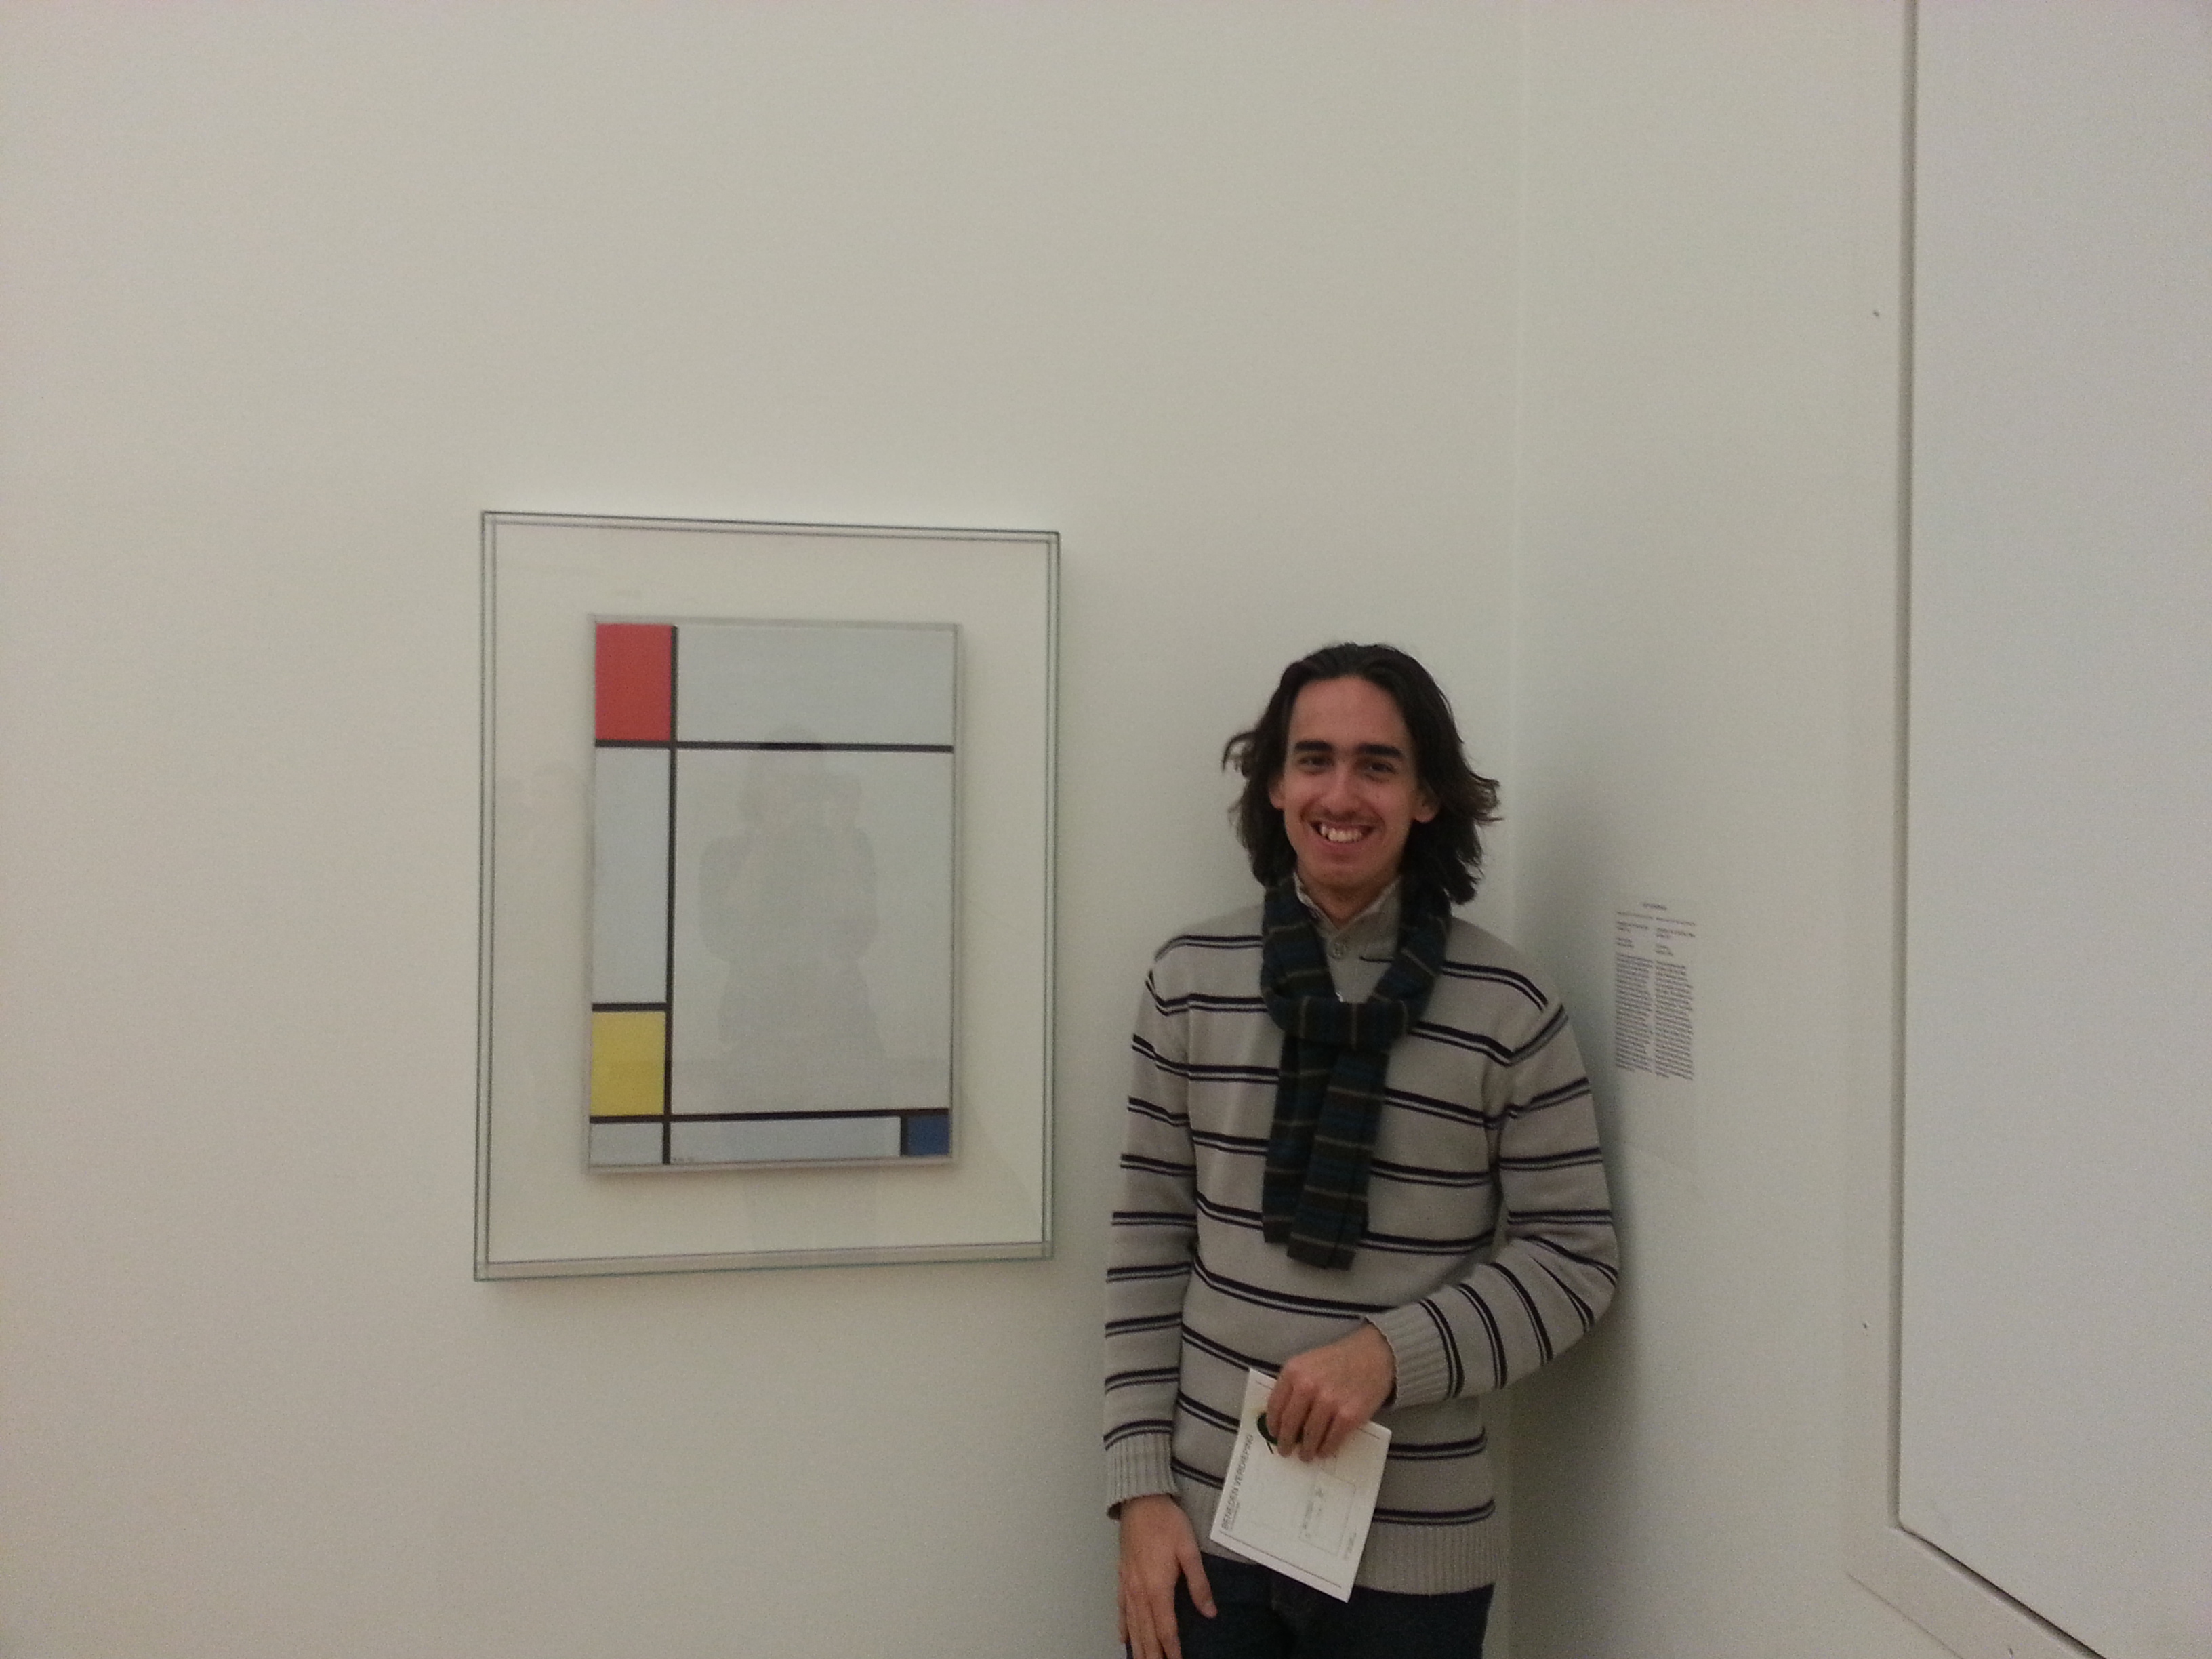 Encontro com as obras de Piet Mondriaan no Stedelijkmuseum Amsterdam